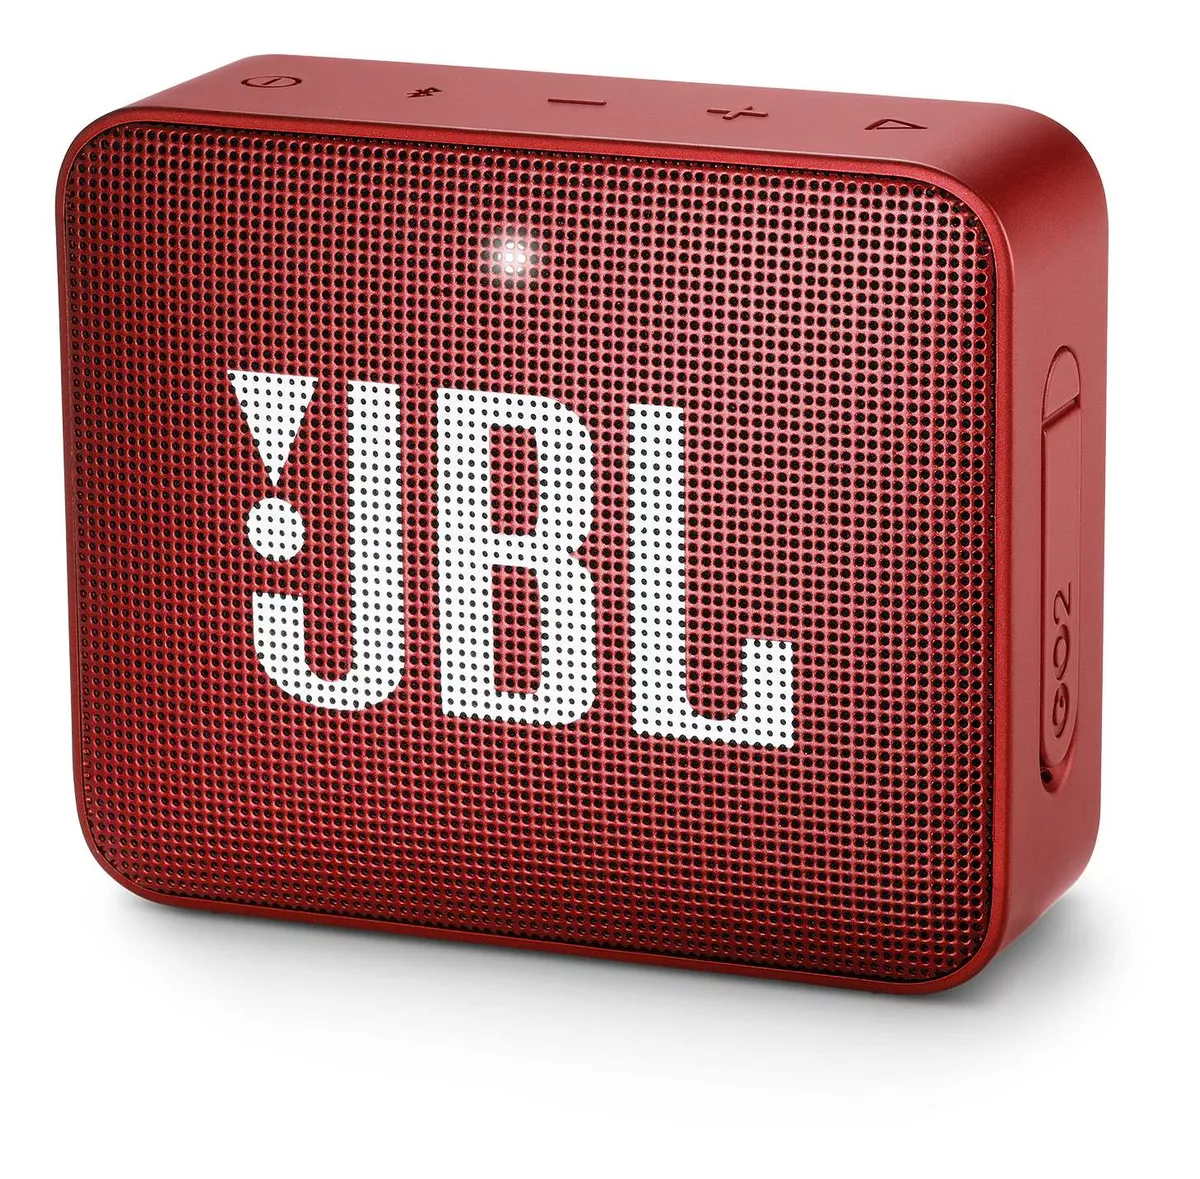 Parlante Jbl Go 2 Portátil Con Bluetooth Ruby Red